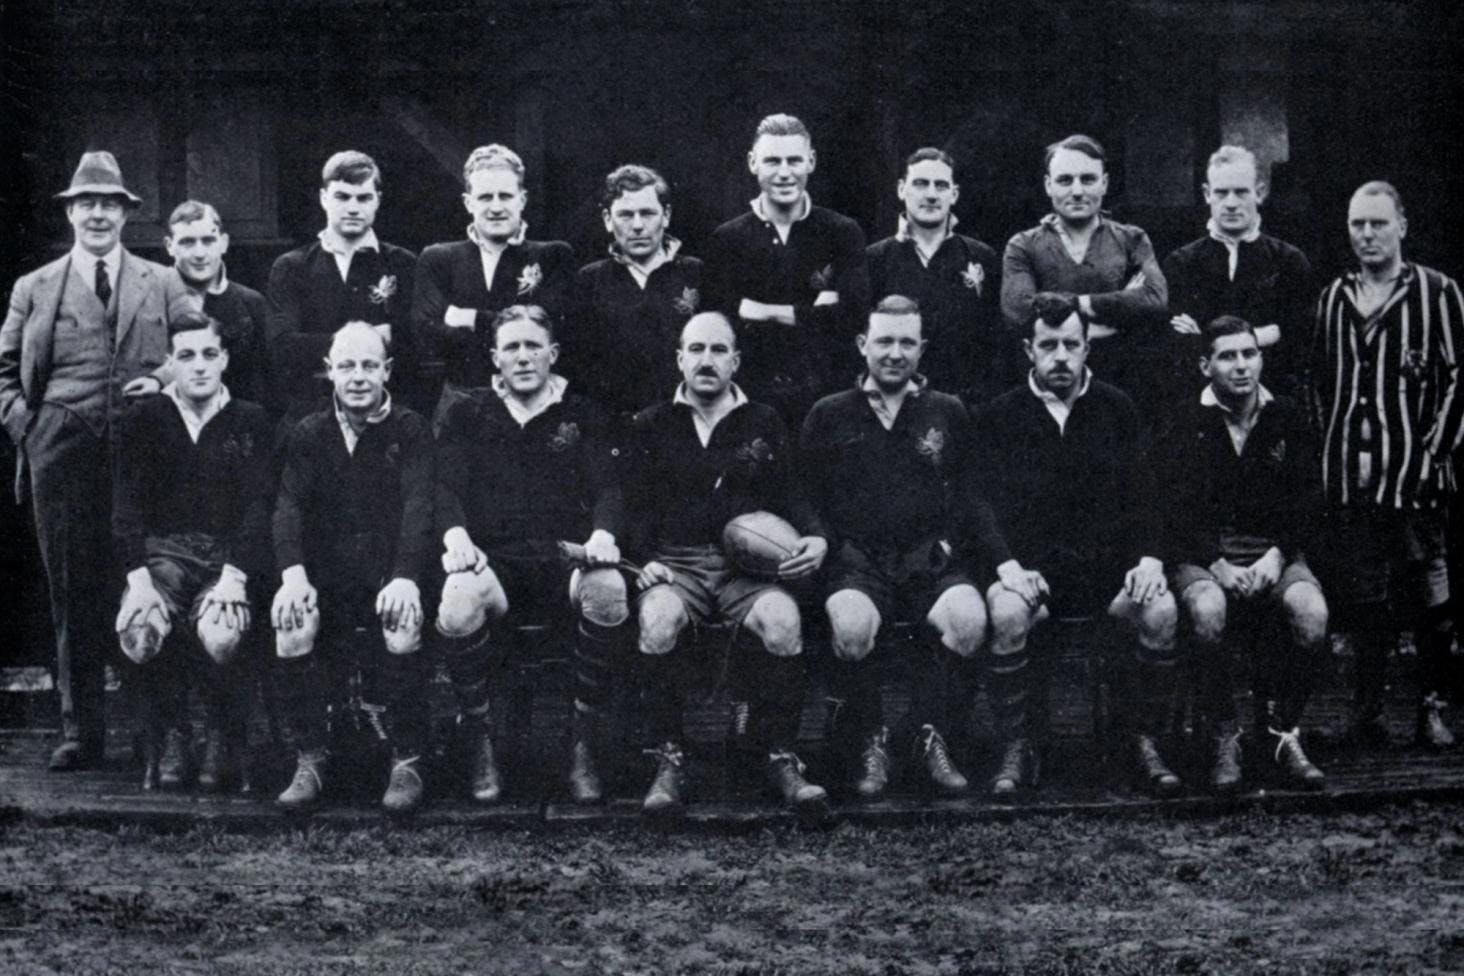 1930-1931 Wasps Rugby Team Photo  (UNBEATEN SEASON)